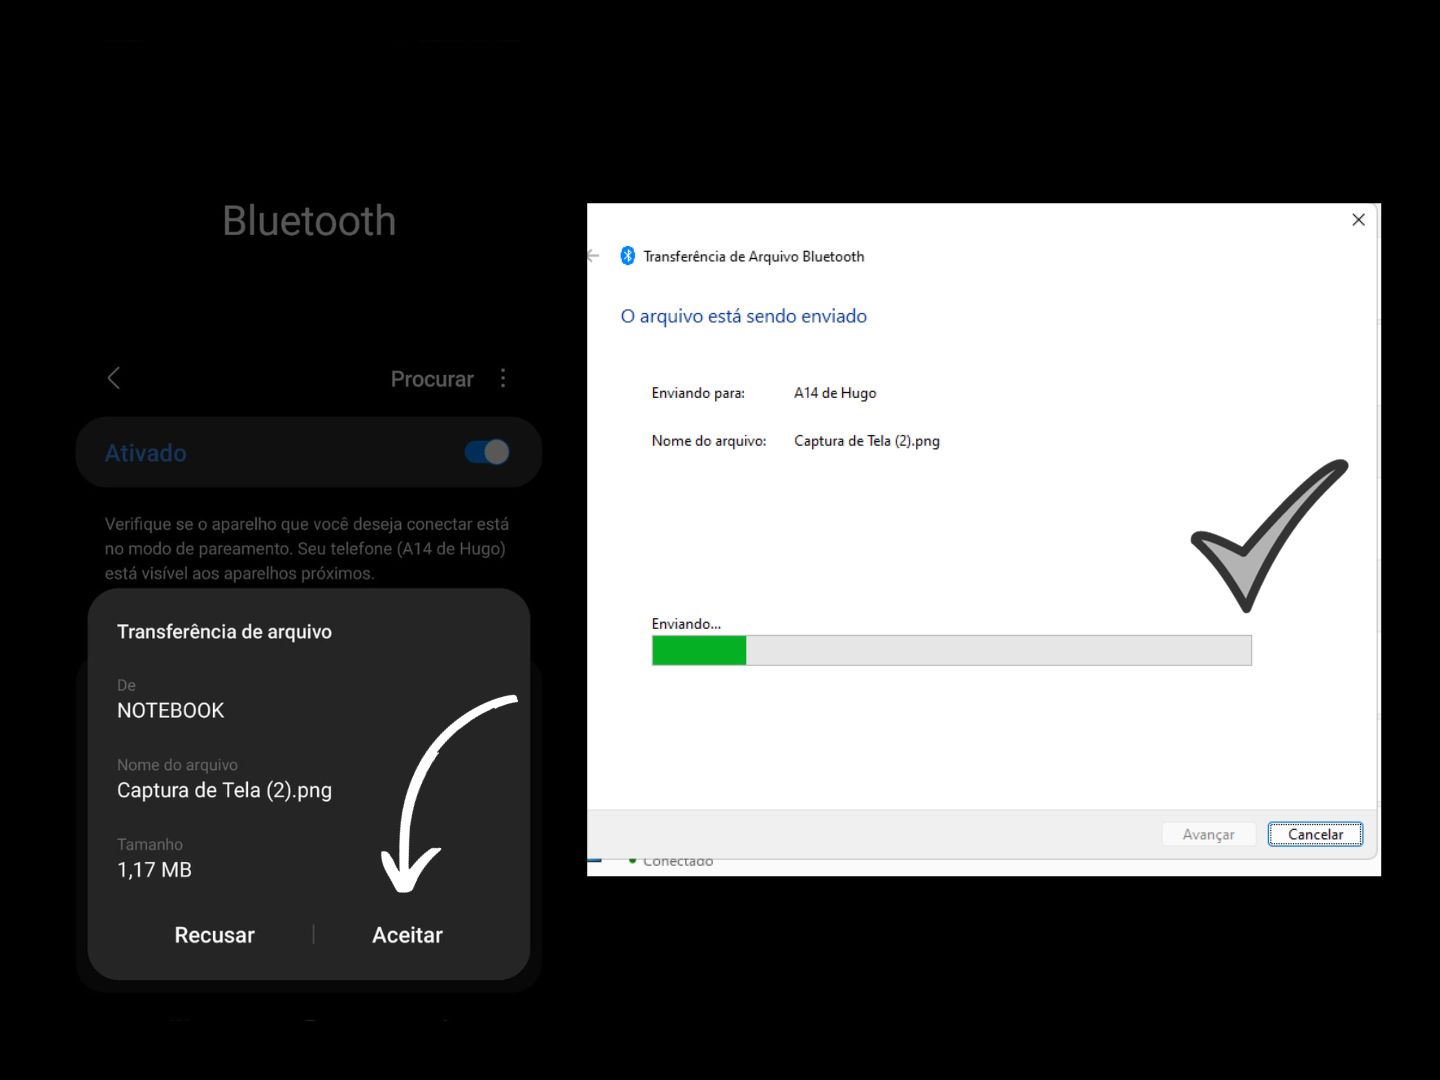 Imagem mostra uma seta apontando onde você deve clicar para receber os arquivos via Bluetooth.